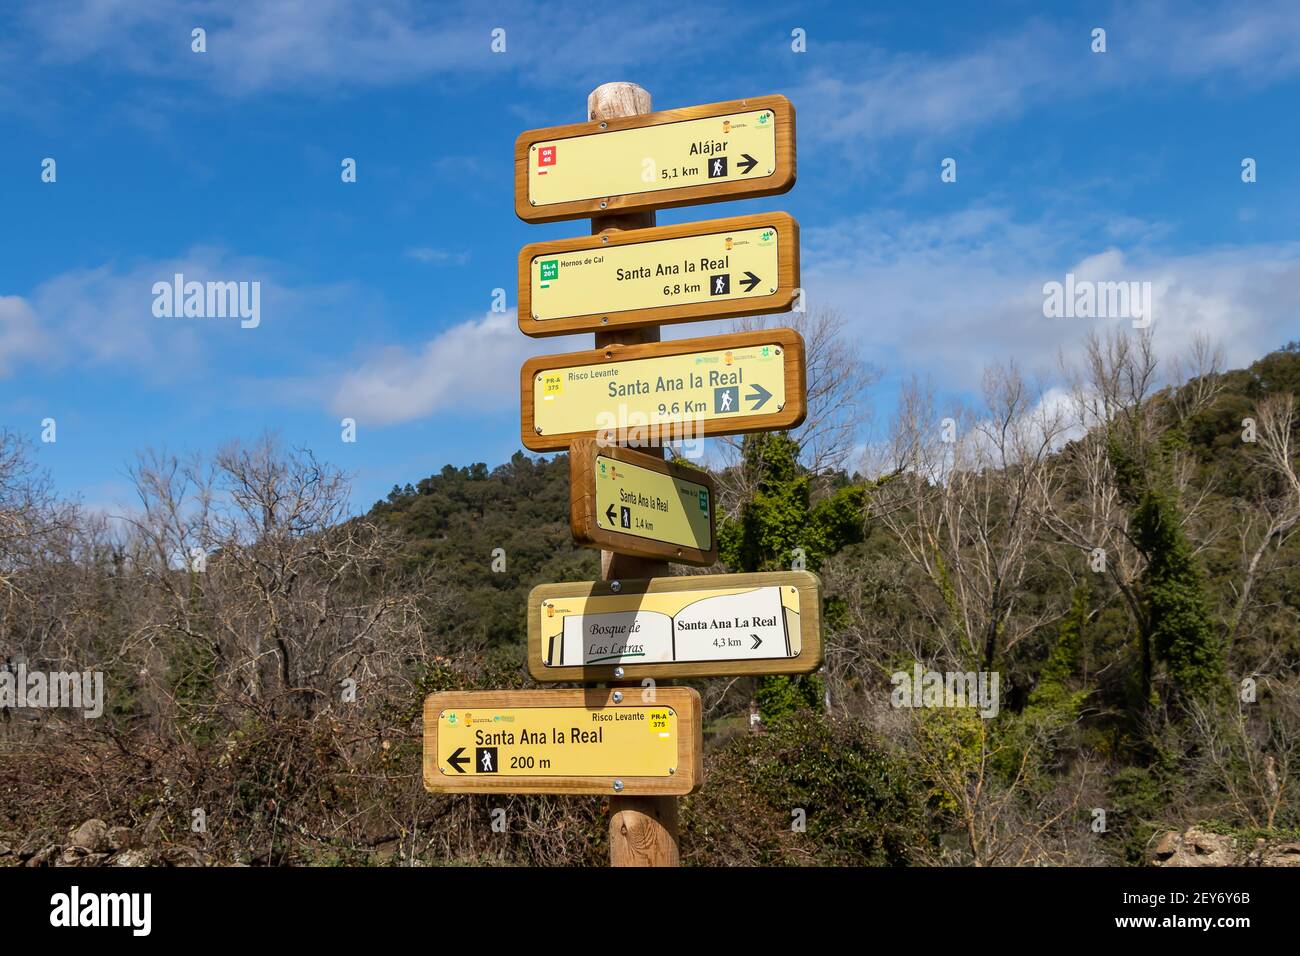 Huelva, Spagna - 1 marzo 2021: Sentiero direzionale in legno Accedi montagna con diversi sentieri escursionistici a Santa Ana la Real, Huelva, Spagna Foto Stock